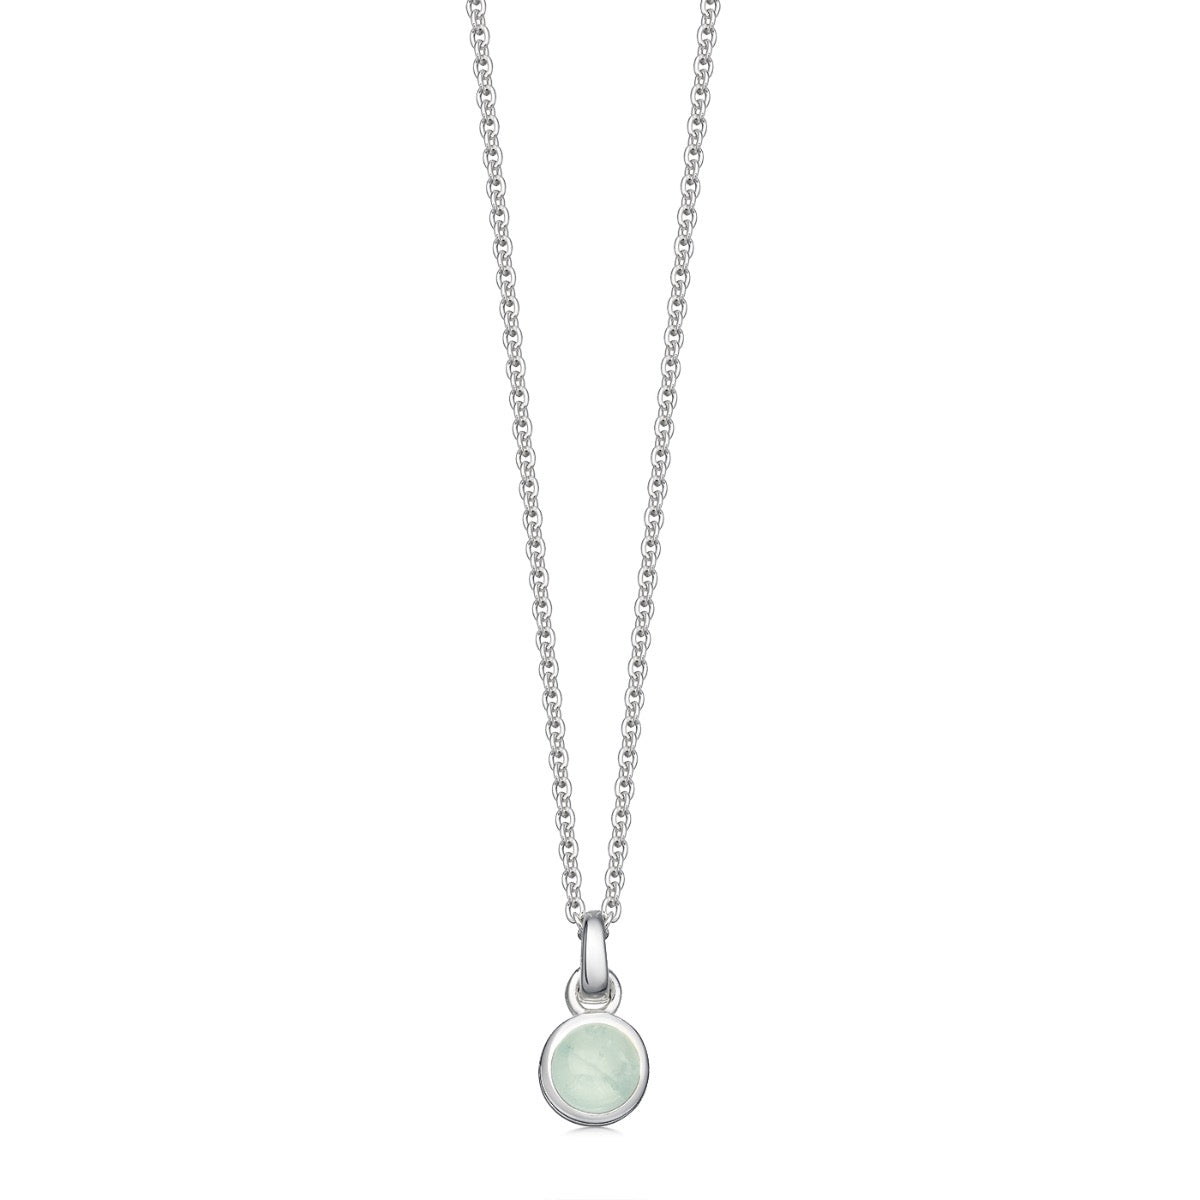 March Birthstone Necklace in Aquamarine | Hersey & Son Silversmiths